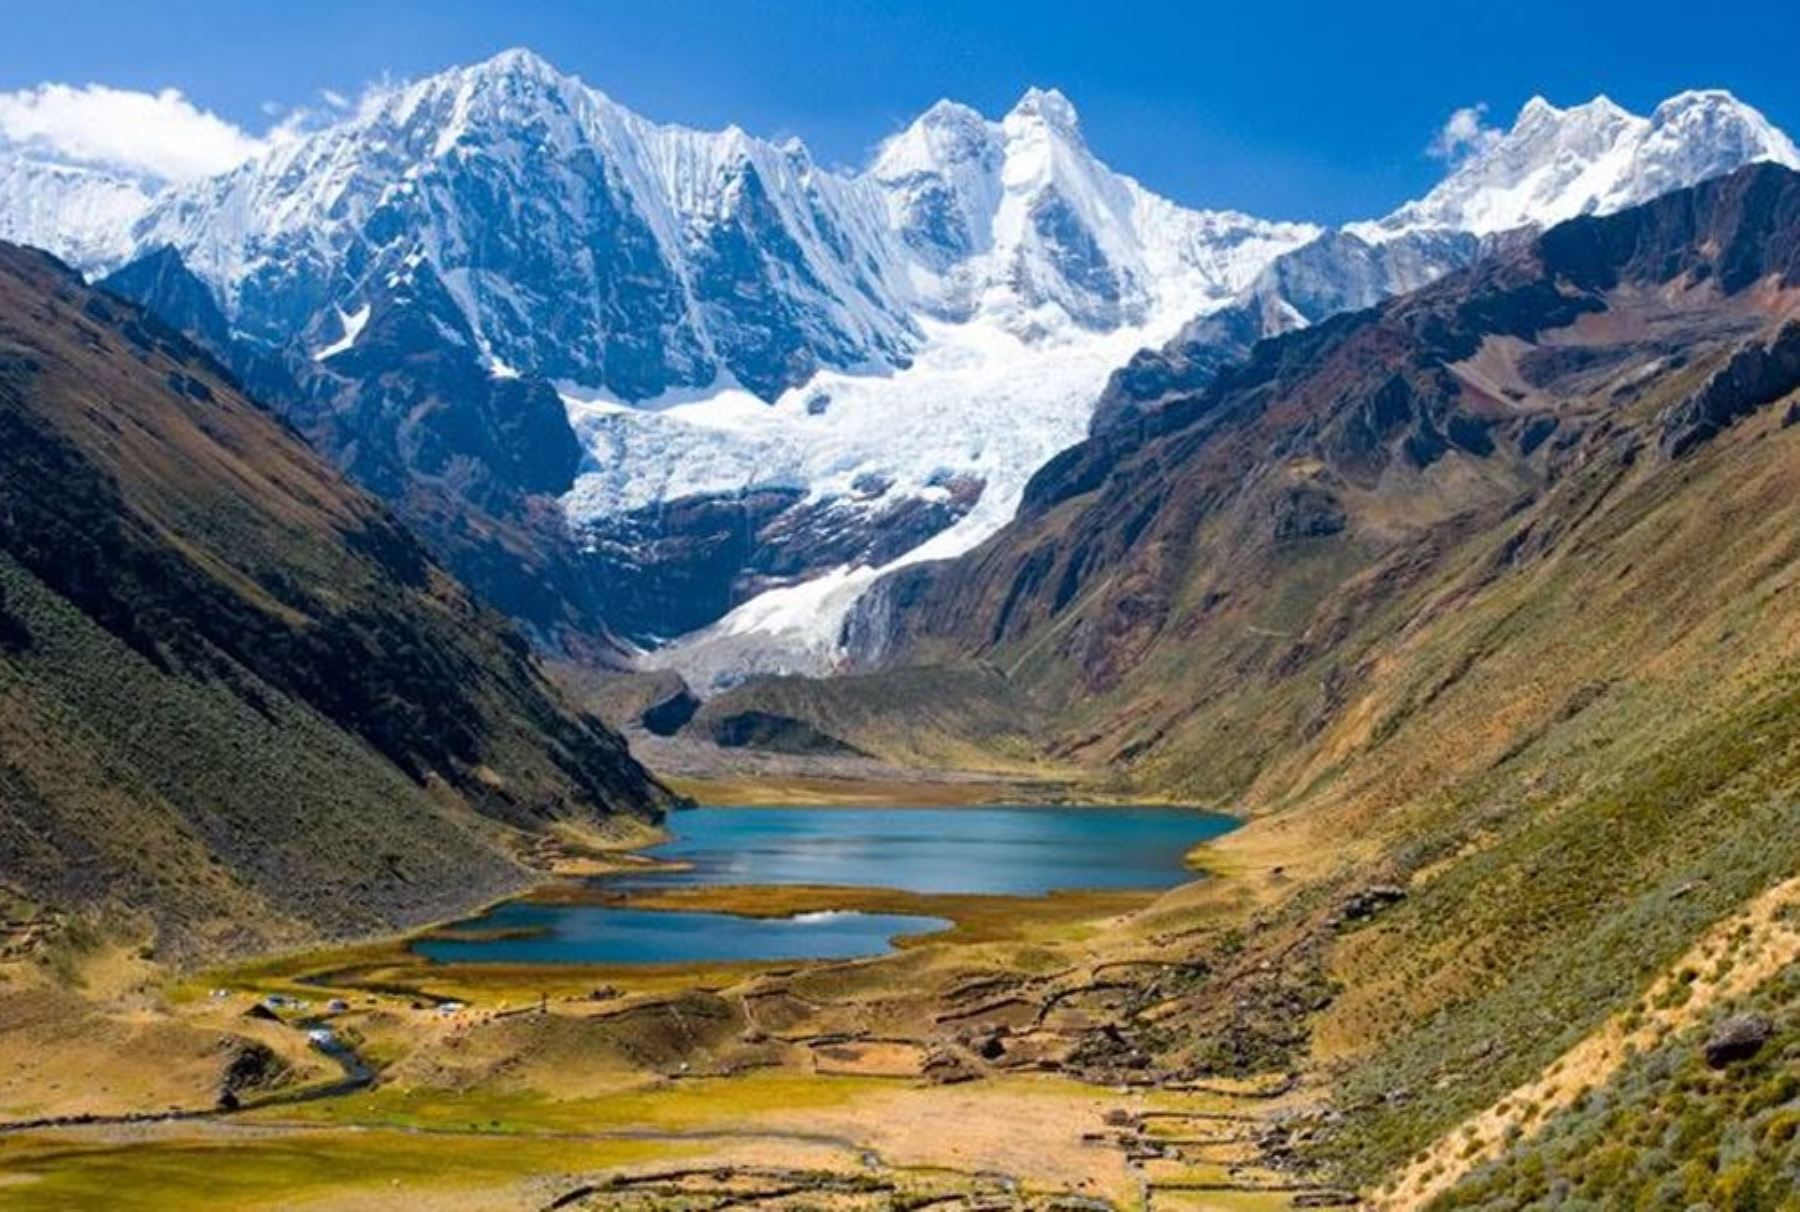 La cordillera Huayhuash es considerada uno de los destinos más espléndidos y bellos para el excursionismo y el montañismo en Perú y el mundo.